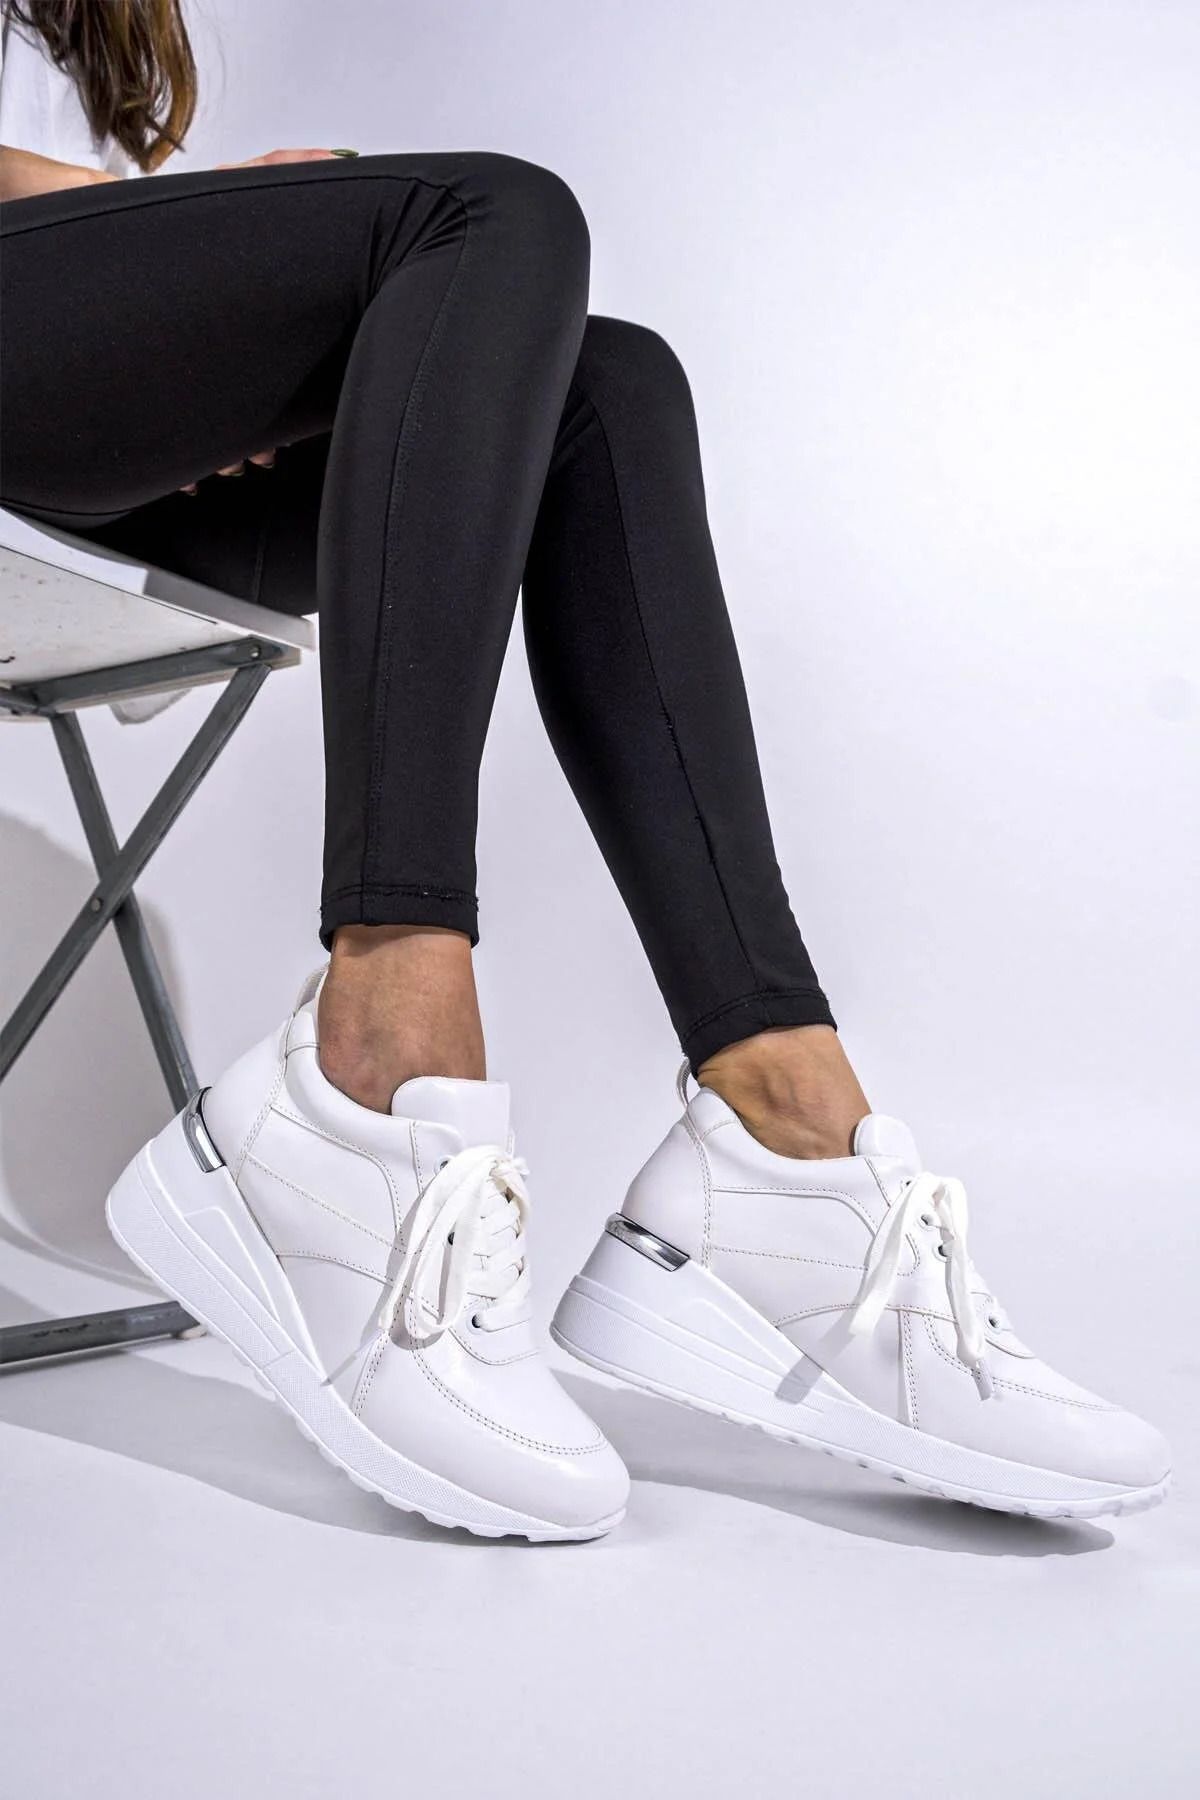 armonika Kadın Beyaz Flr609 Dolgu Topuk Bağcıklı Spor Ayakkabı ARM-24K128009